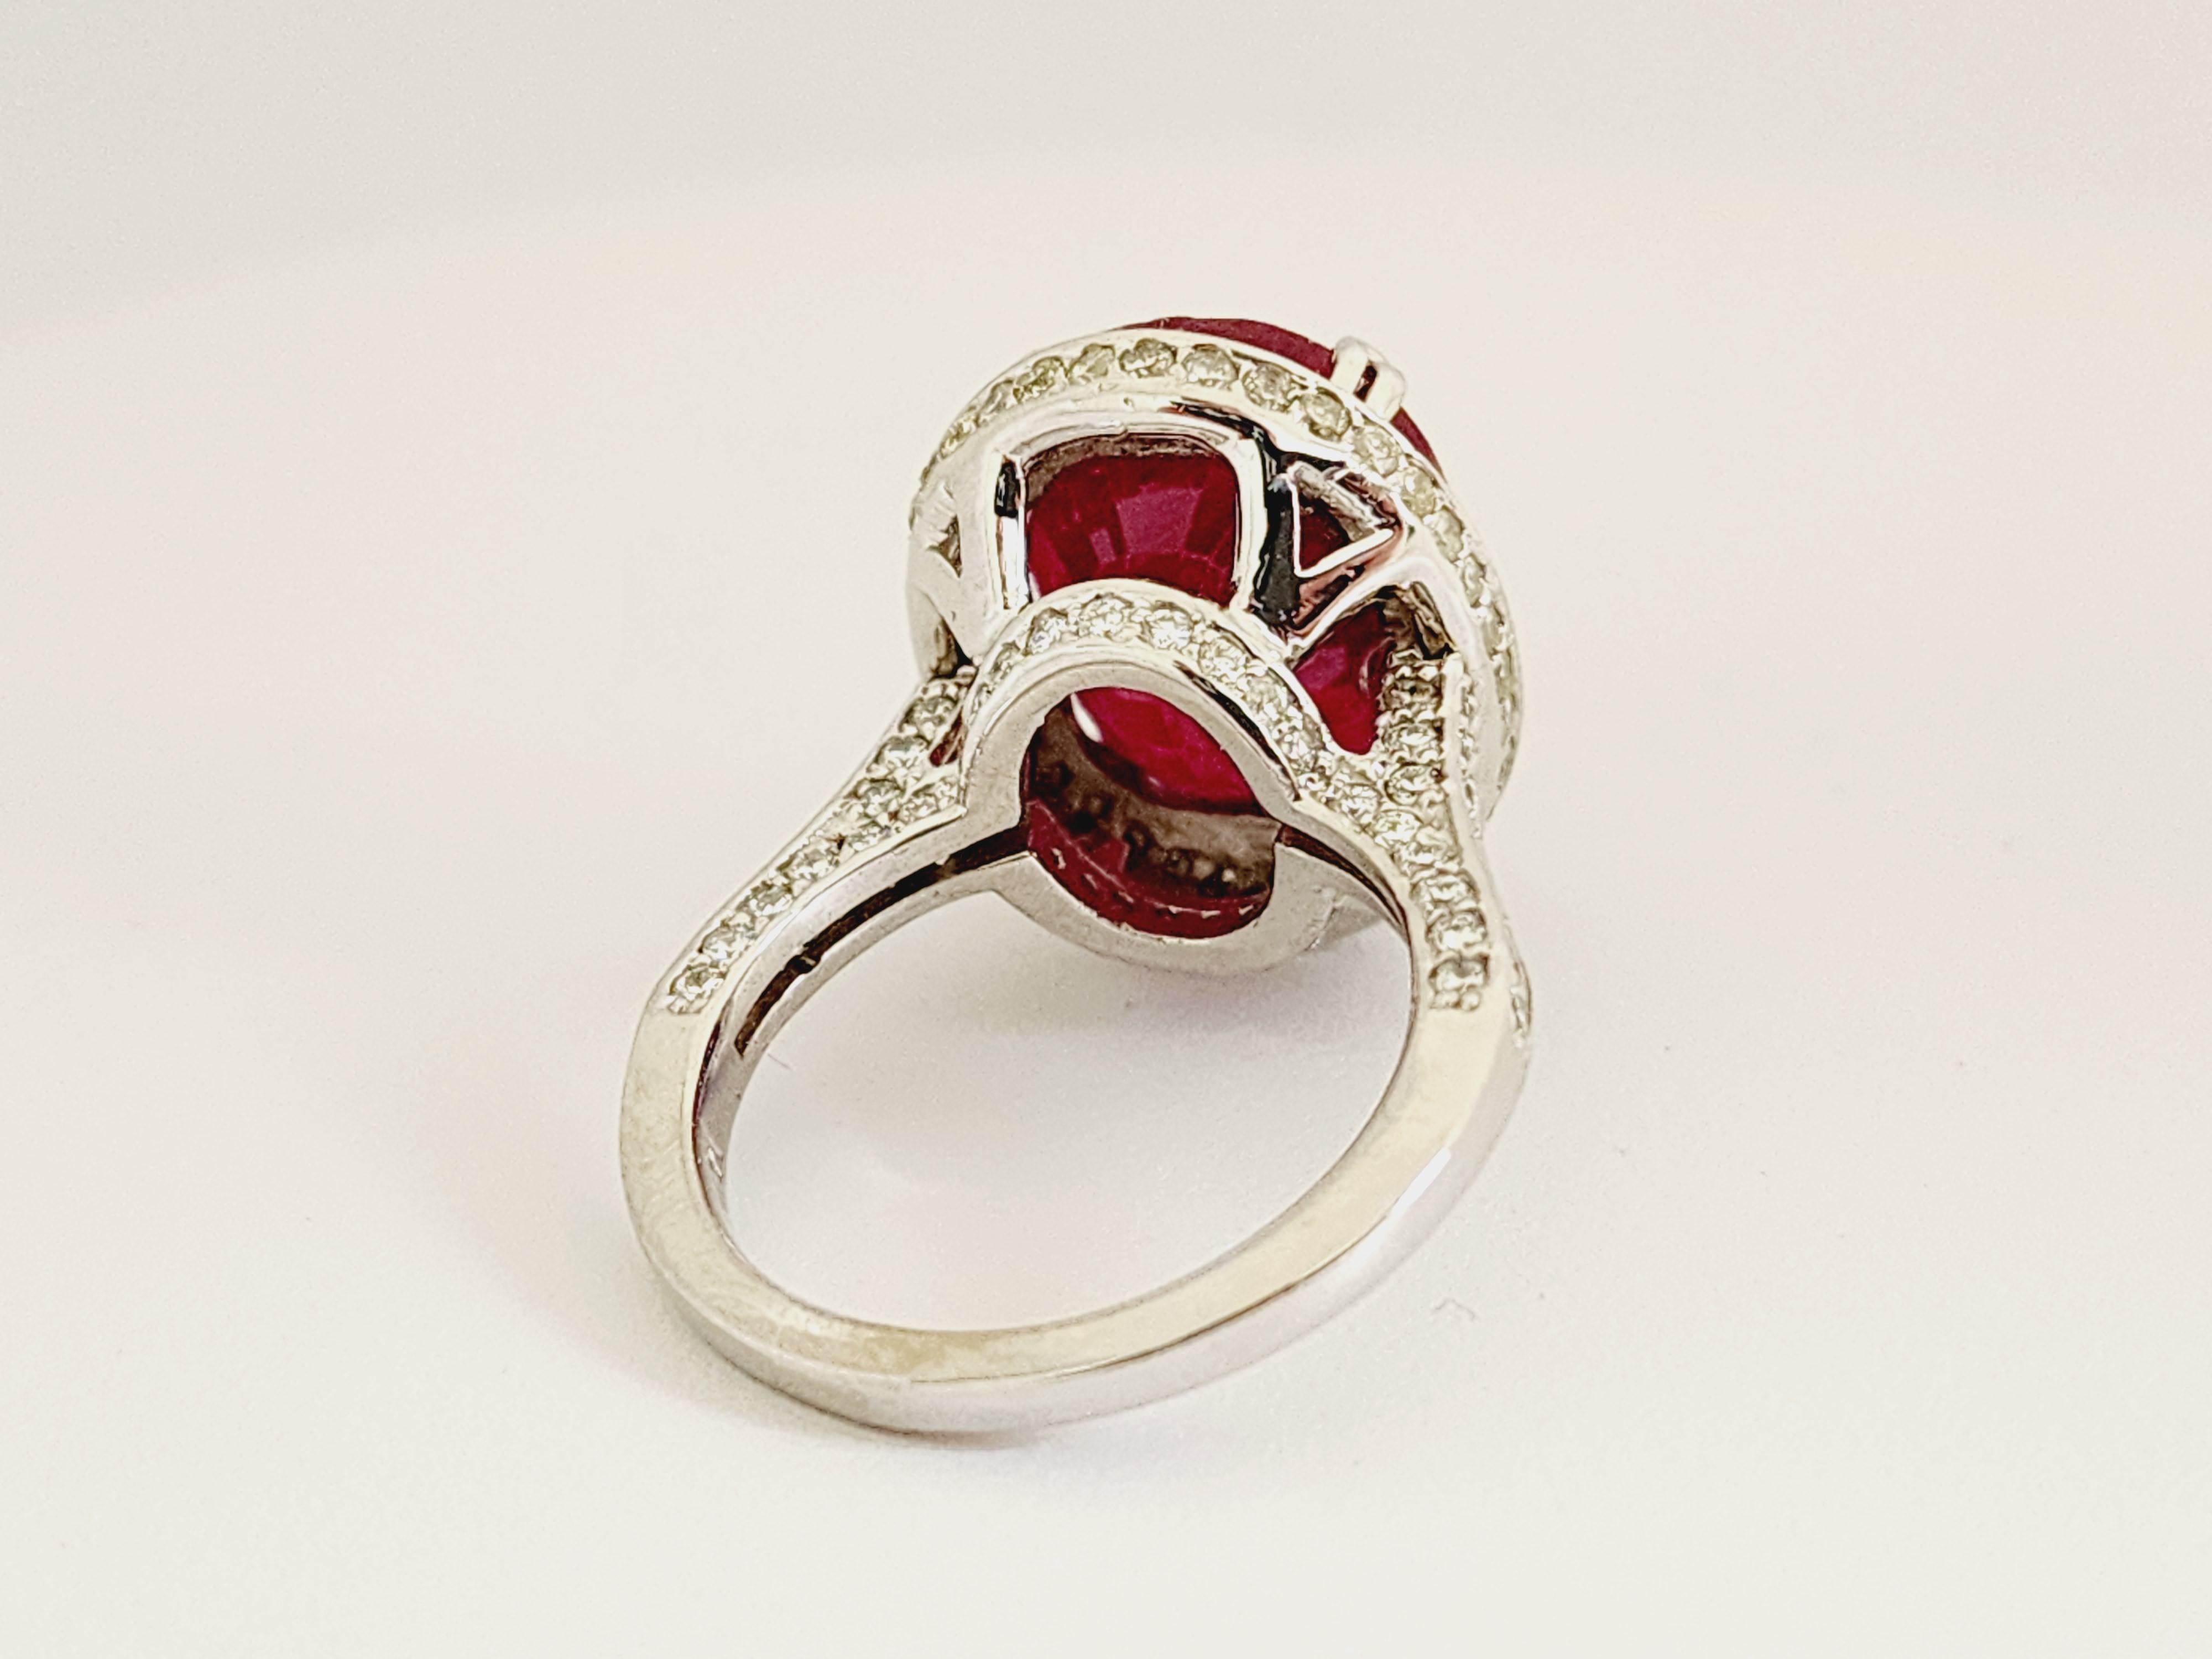 Echter Rubin ovale Form umgeben von natürlichen Diamanten auf dem Ring 14K Weißgold. Einzigartig, brillant und schön.

Rubin Größe: 13,82 ctw Glasgefüllt
Diamanten: 2,35 cttw Durchschnitt I-SI
Ringgröße: 7